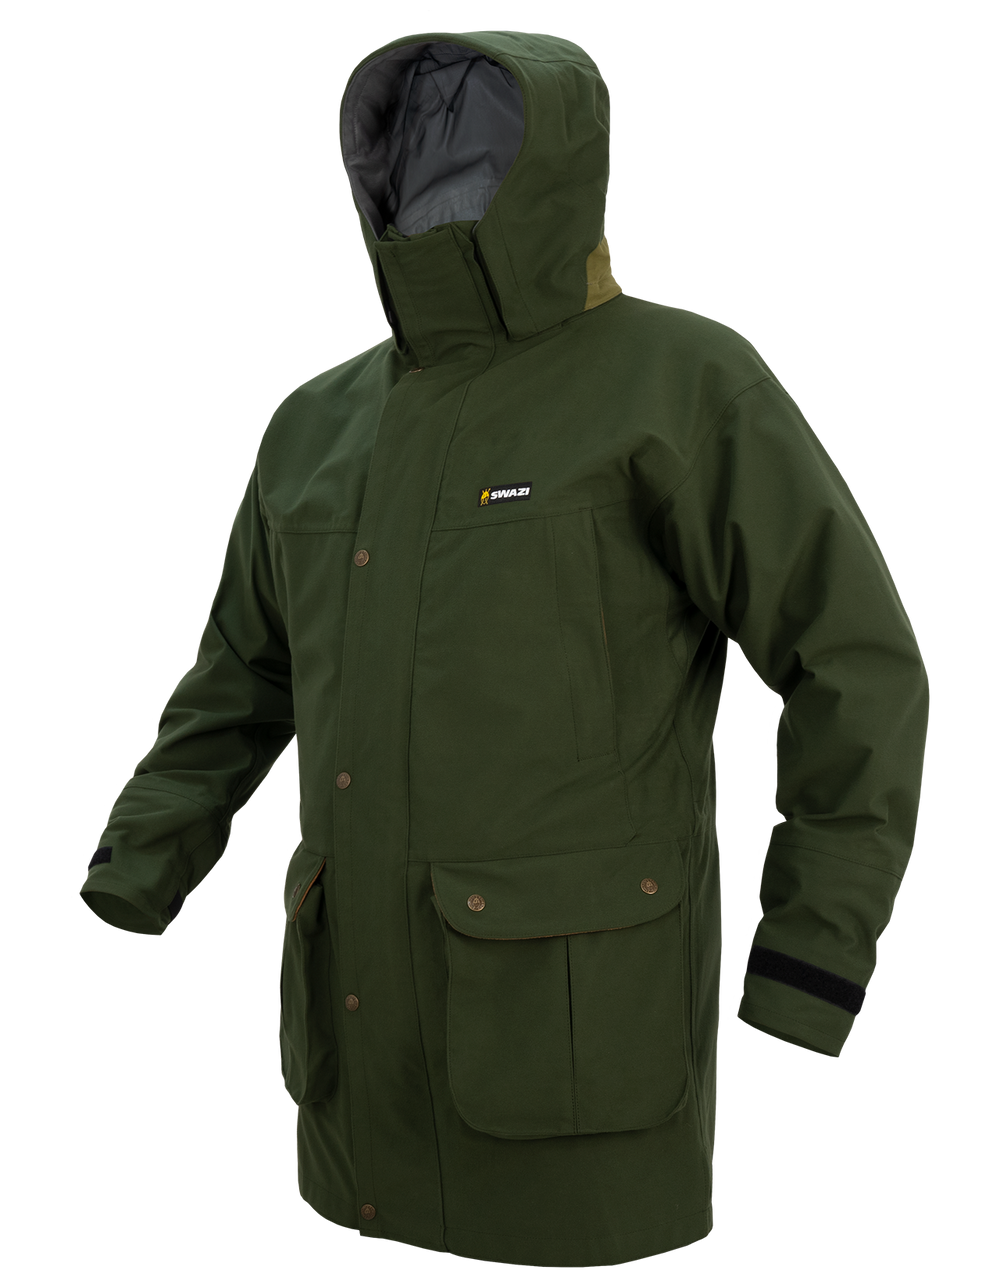 Swazi Jackets - The Wapiti XP Waterproof Jacket